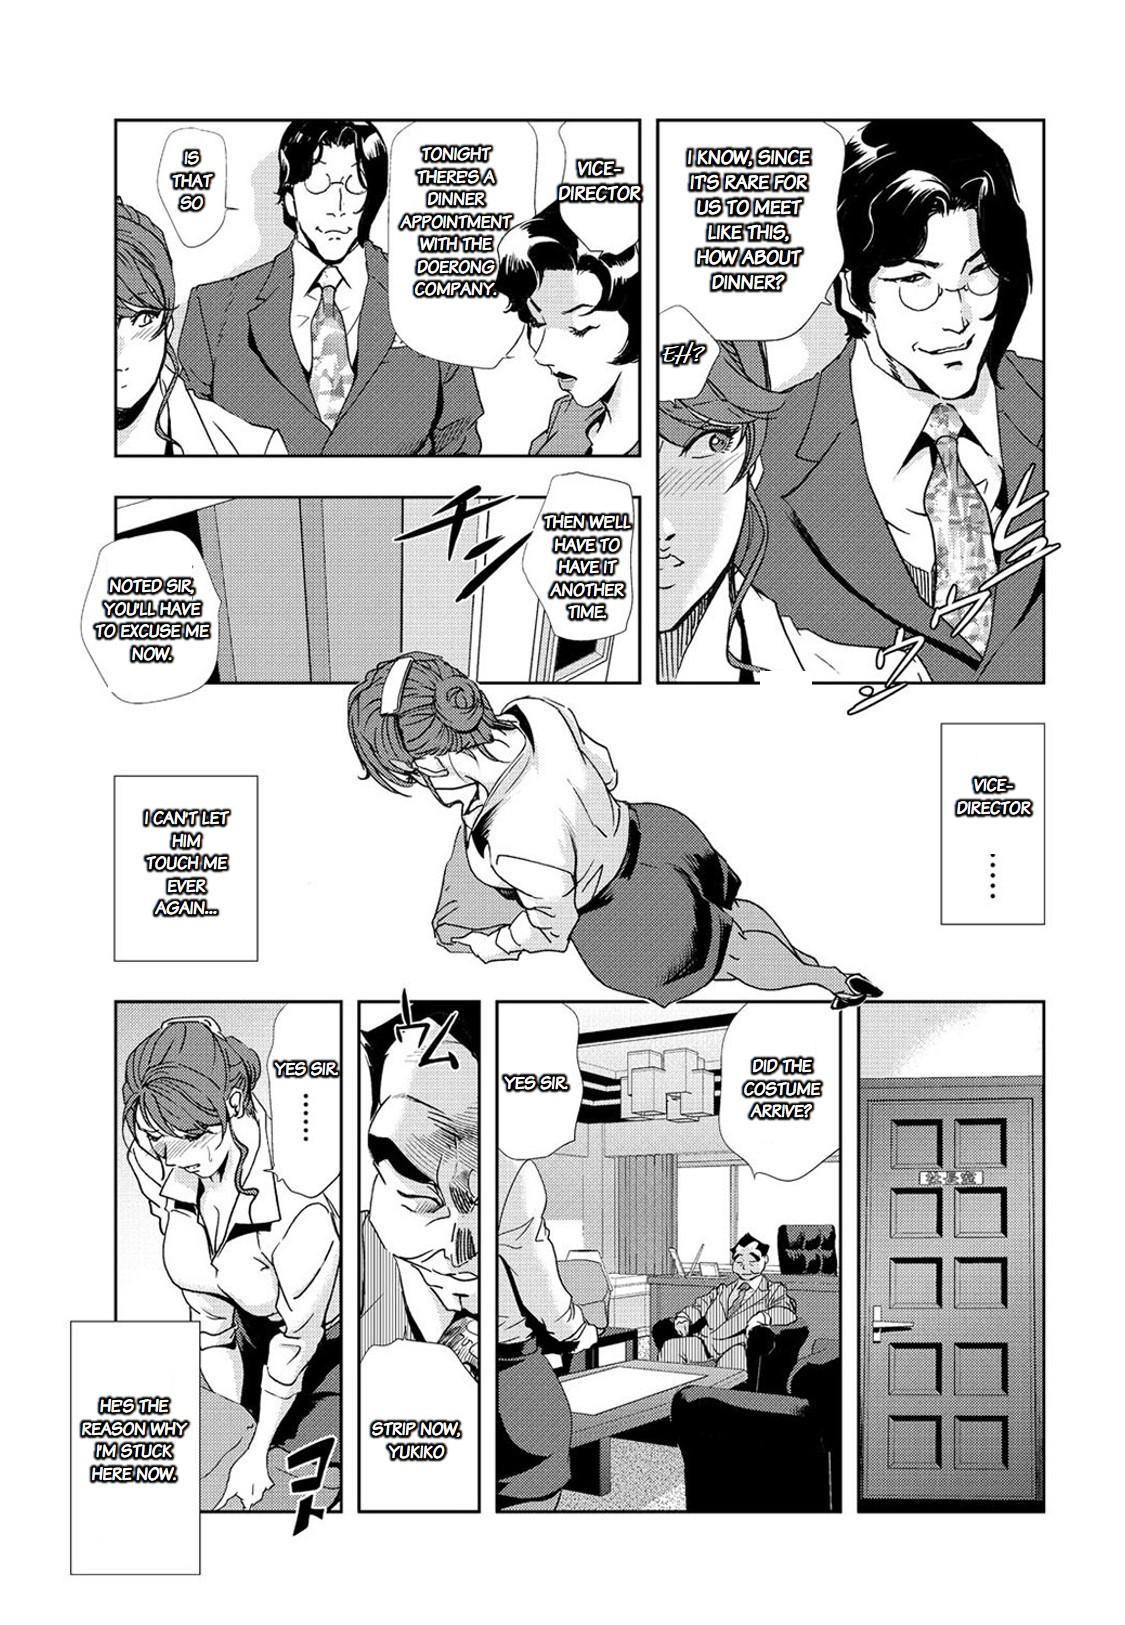 Nikuhisyo Yukiko chapter 25 3